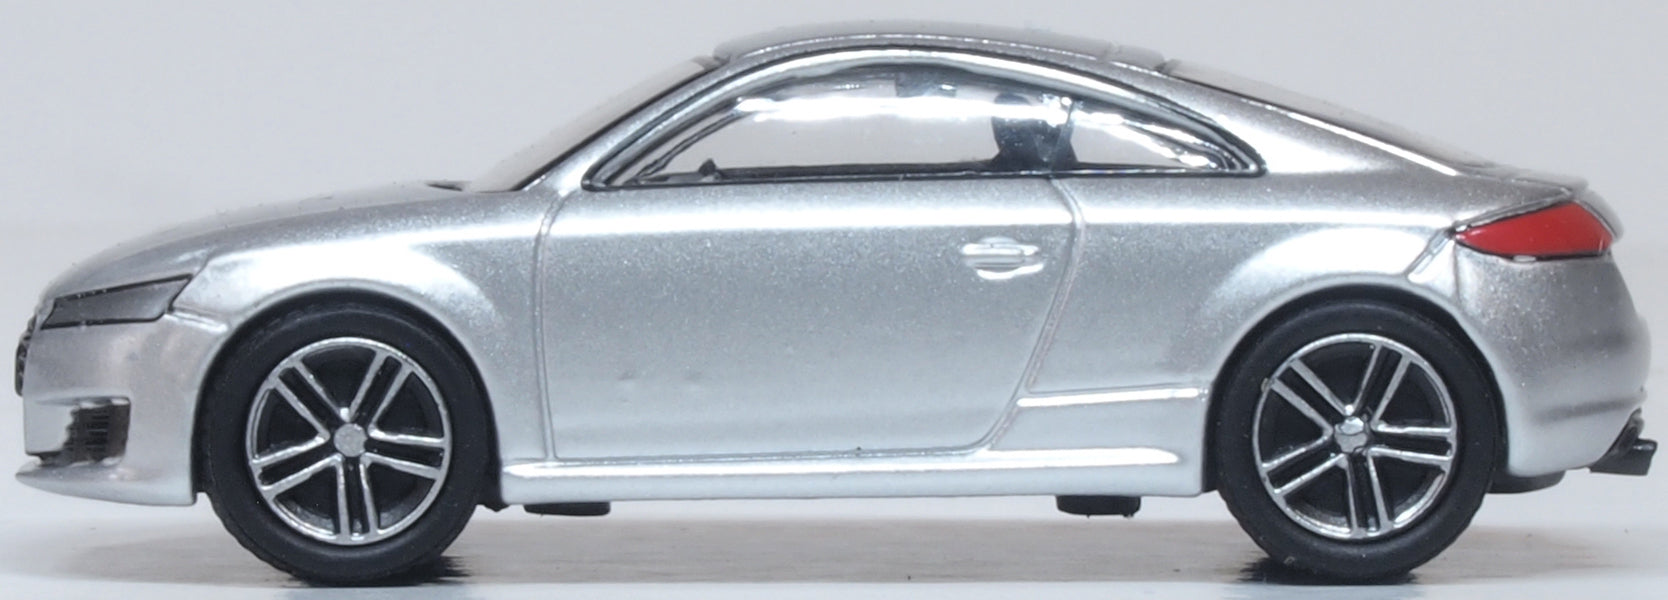 Oxford Diecast Floret Silver Audi Tt Coupe